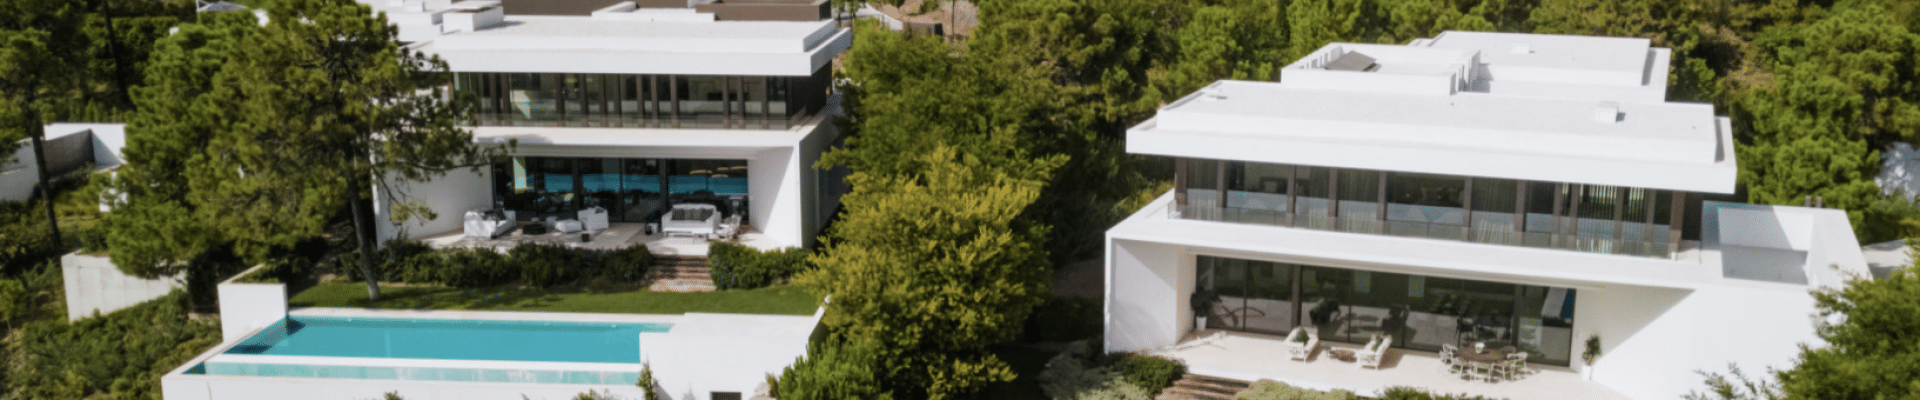 Modern Luxury Villas for Sale in Marbella